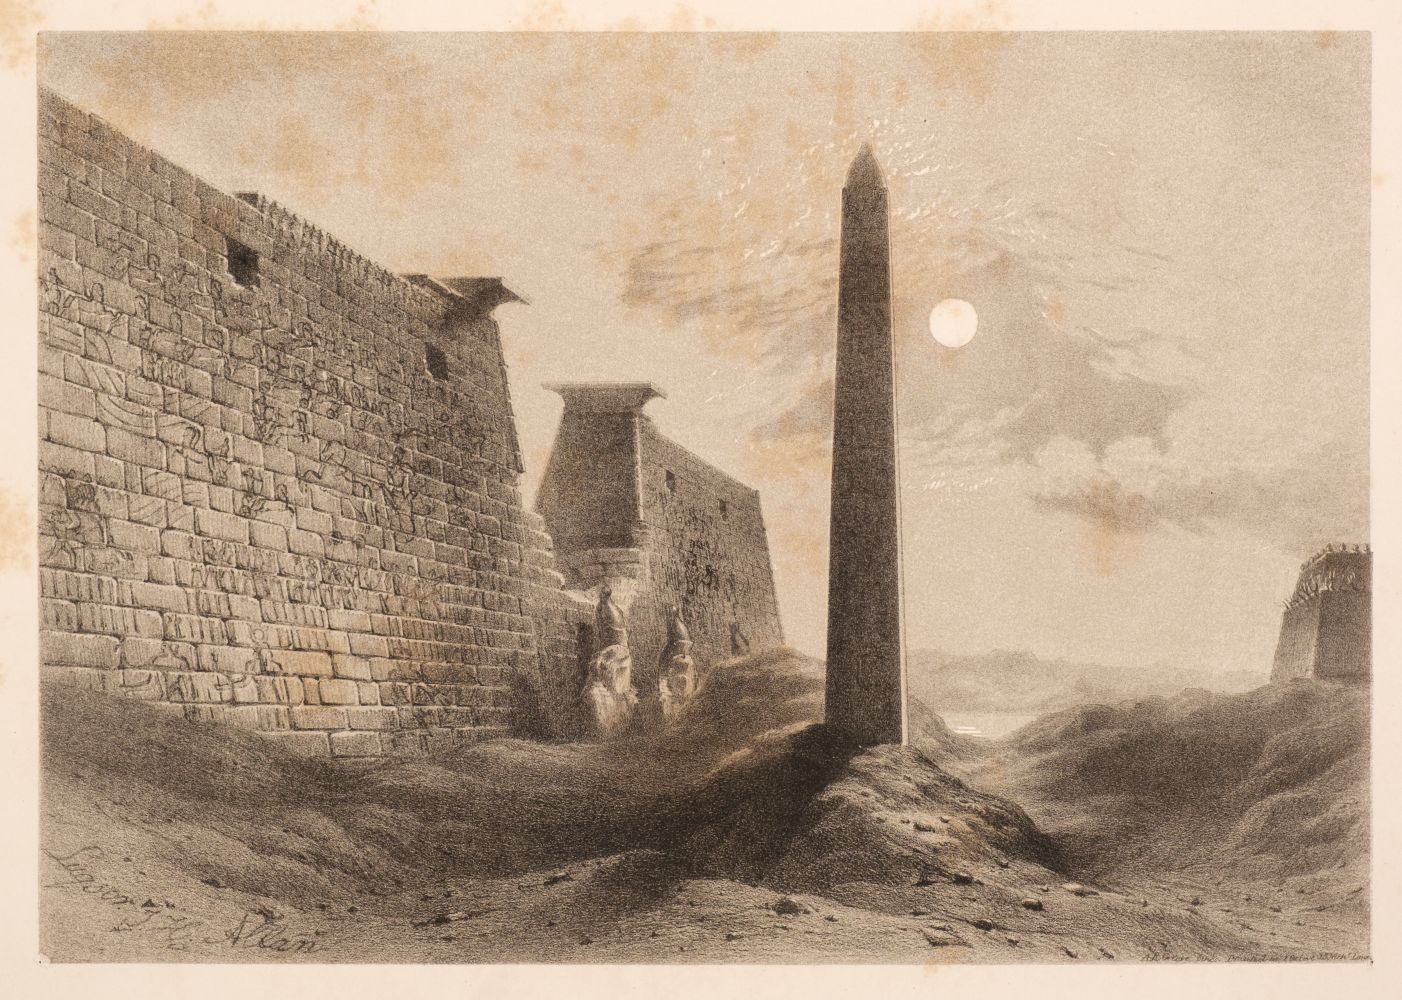 Allan (John H). A Pictorial Tour in the Mediterranean, London: Longman, 1843